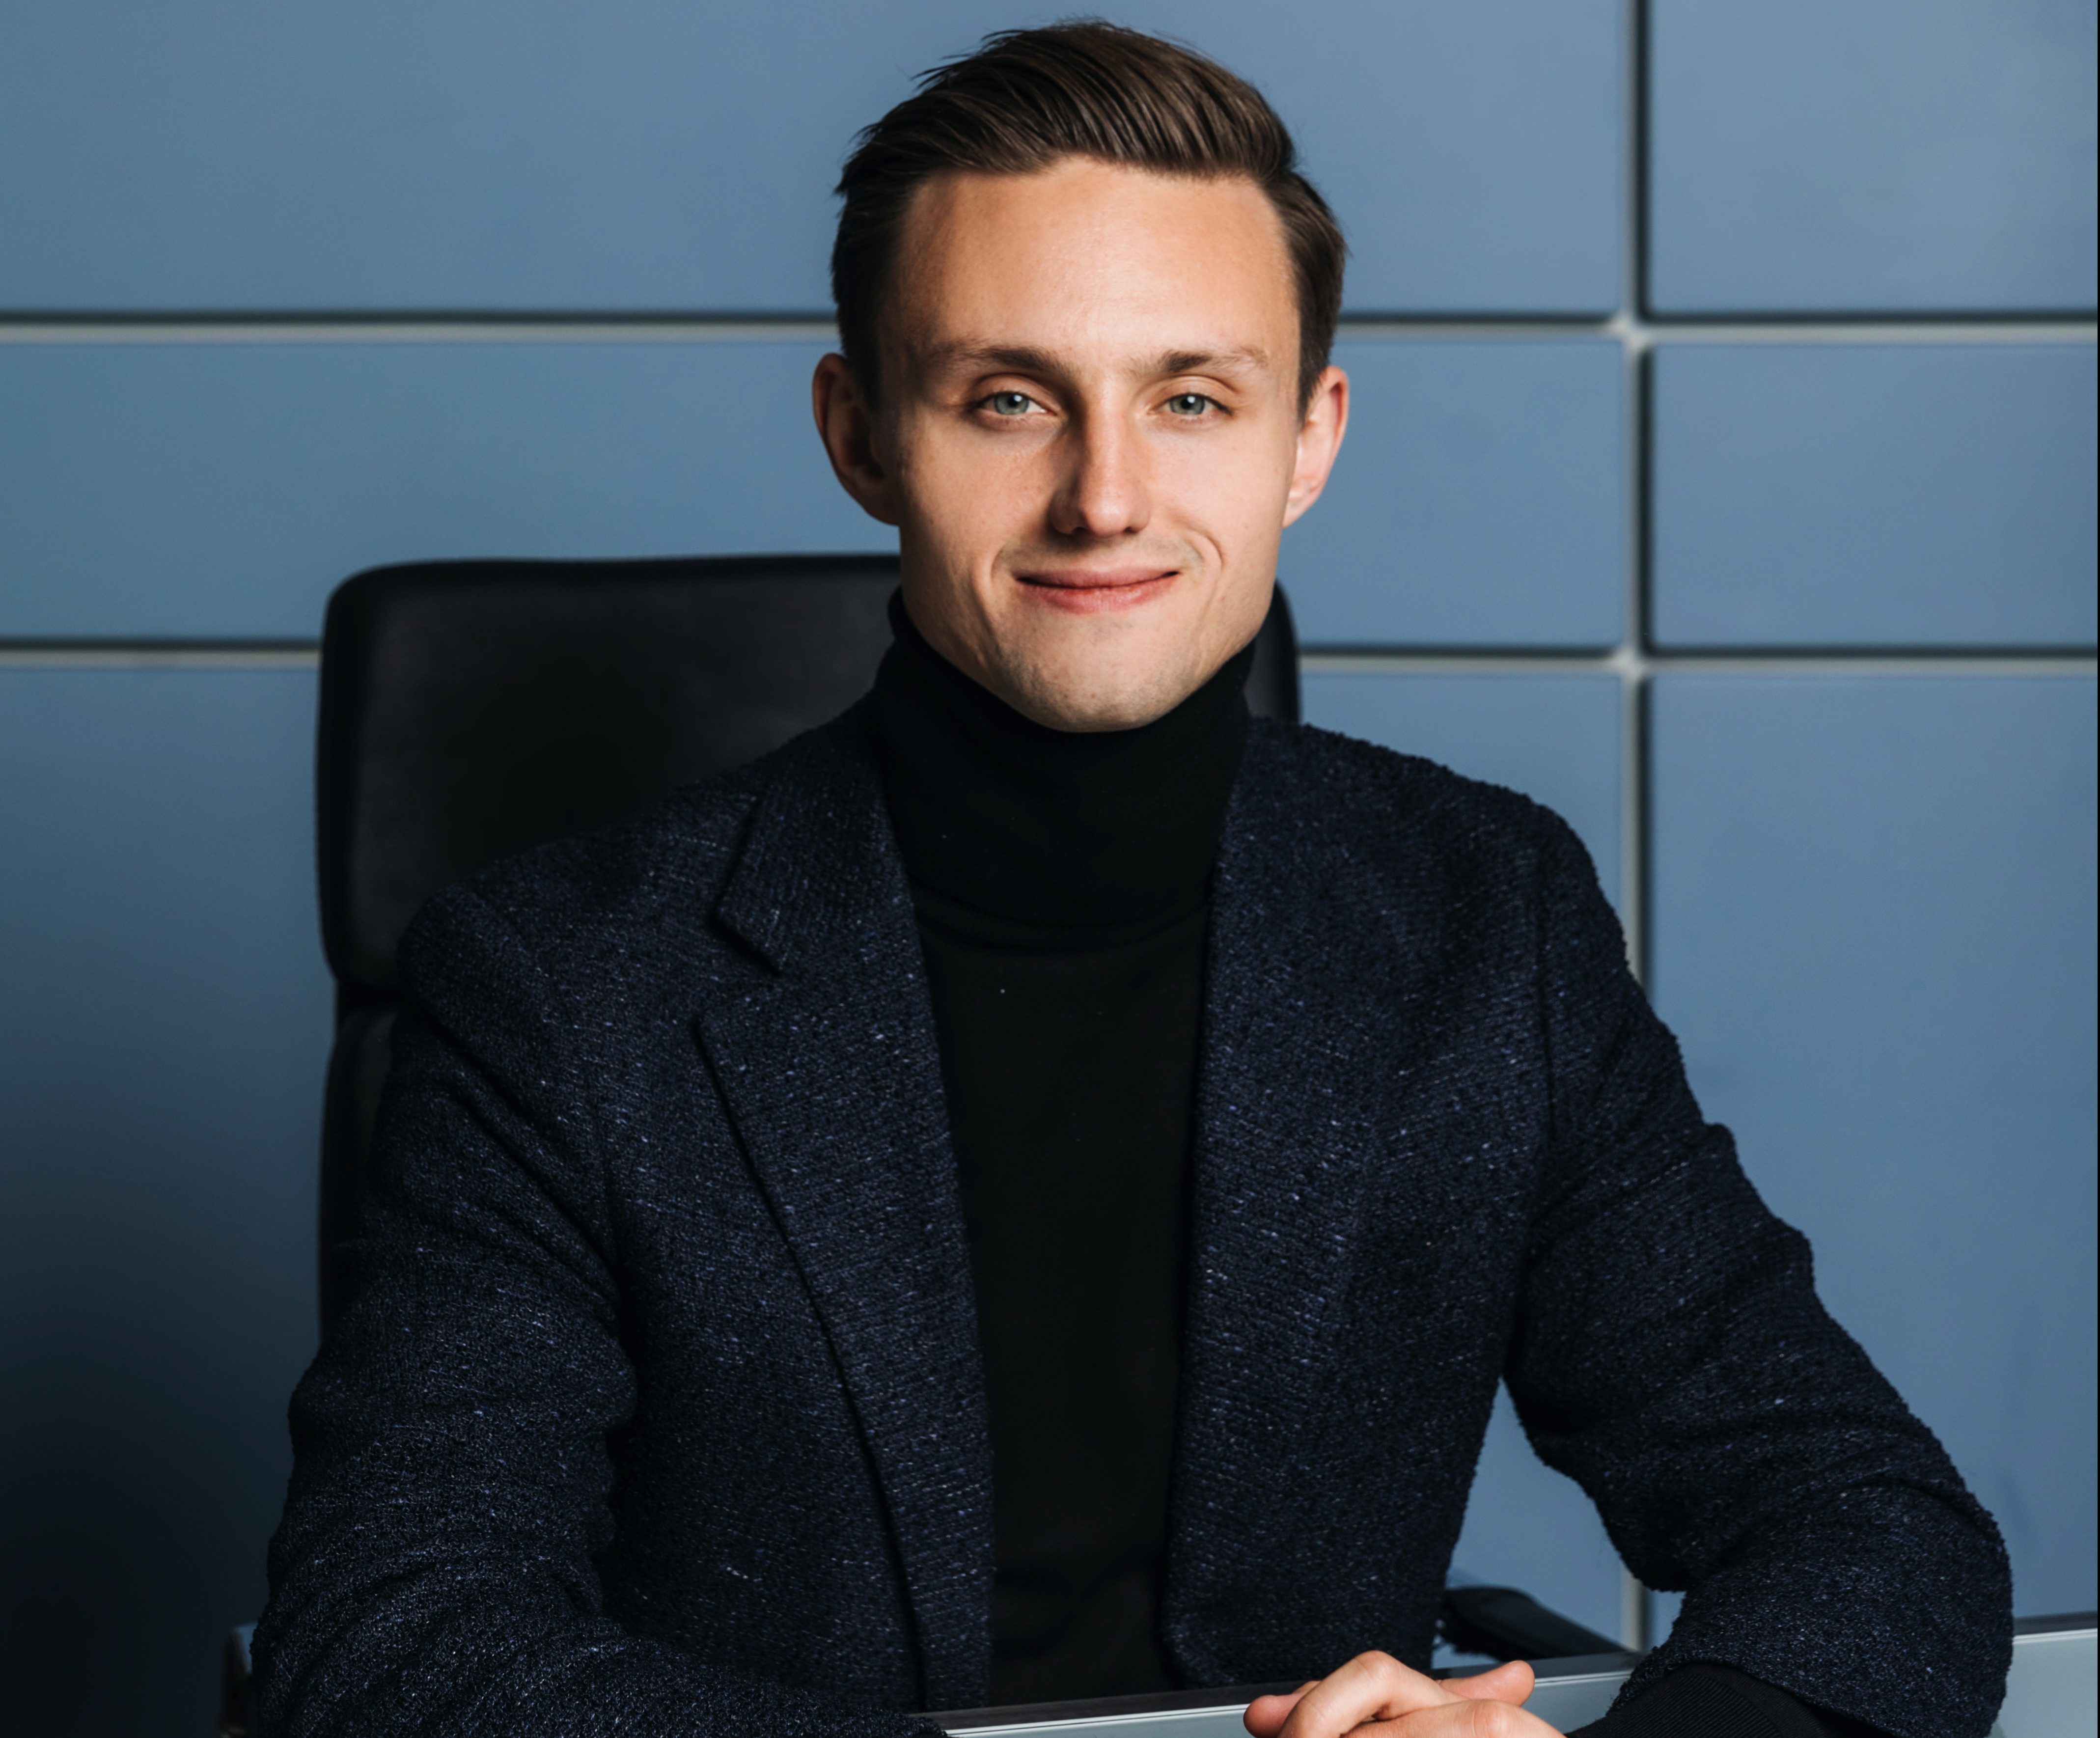 Максим Гральник предприниматель, владелец трех прибыльных компаний, бизнес консультант и основатель бизнес школы